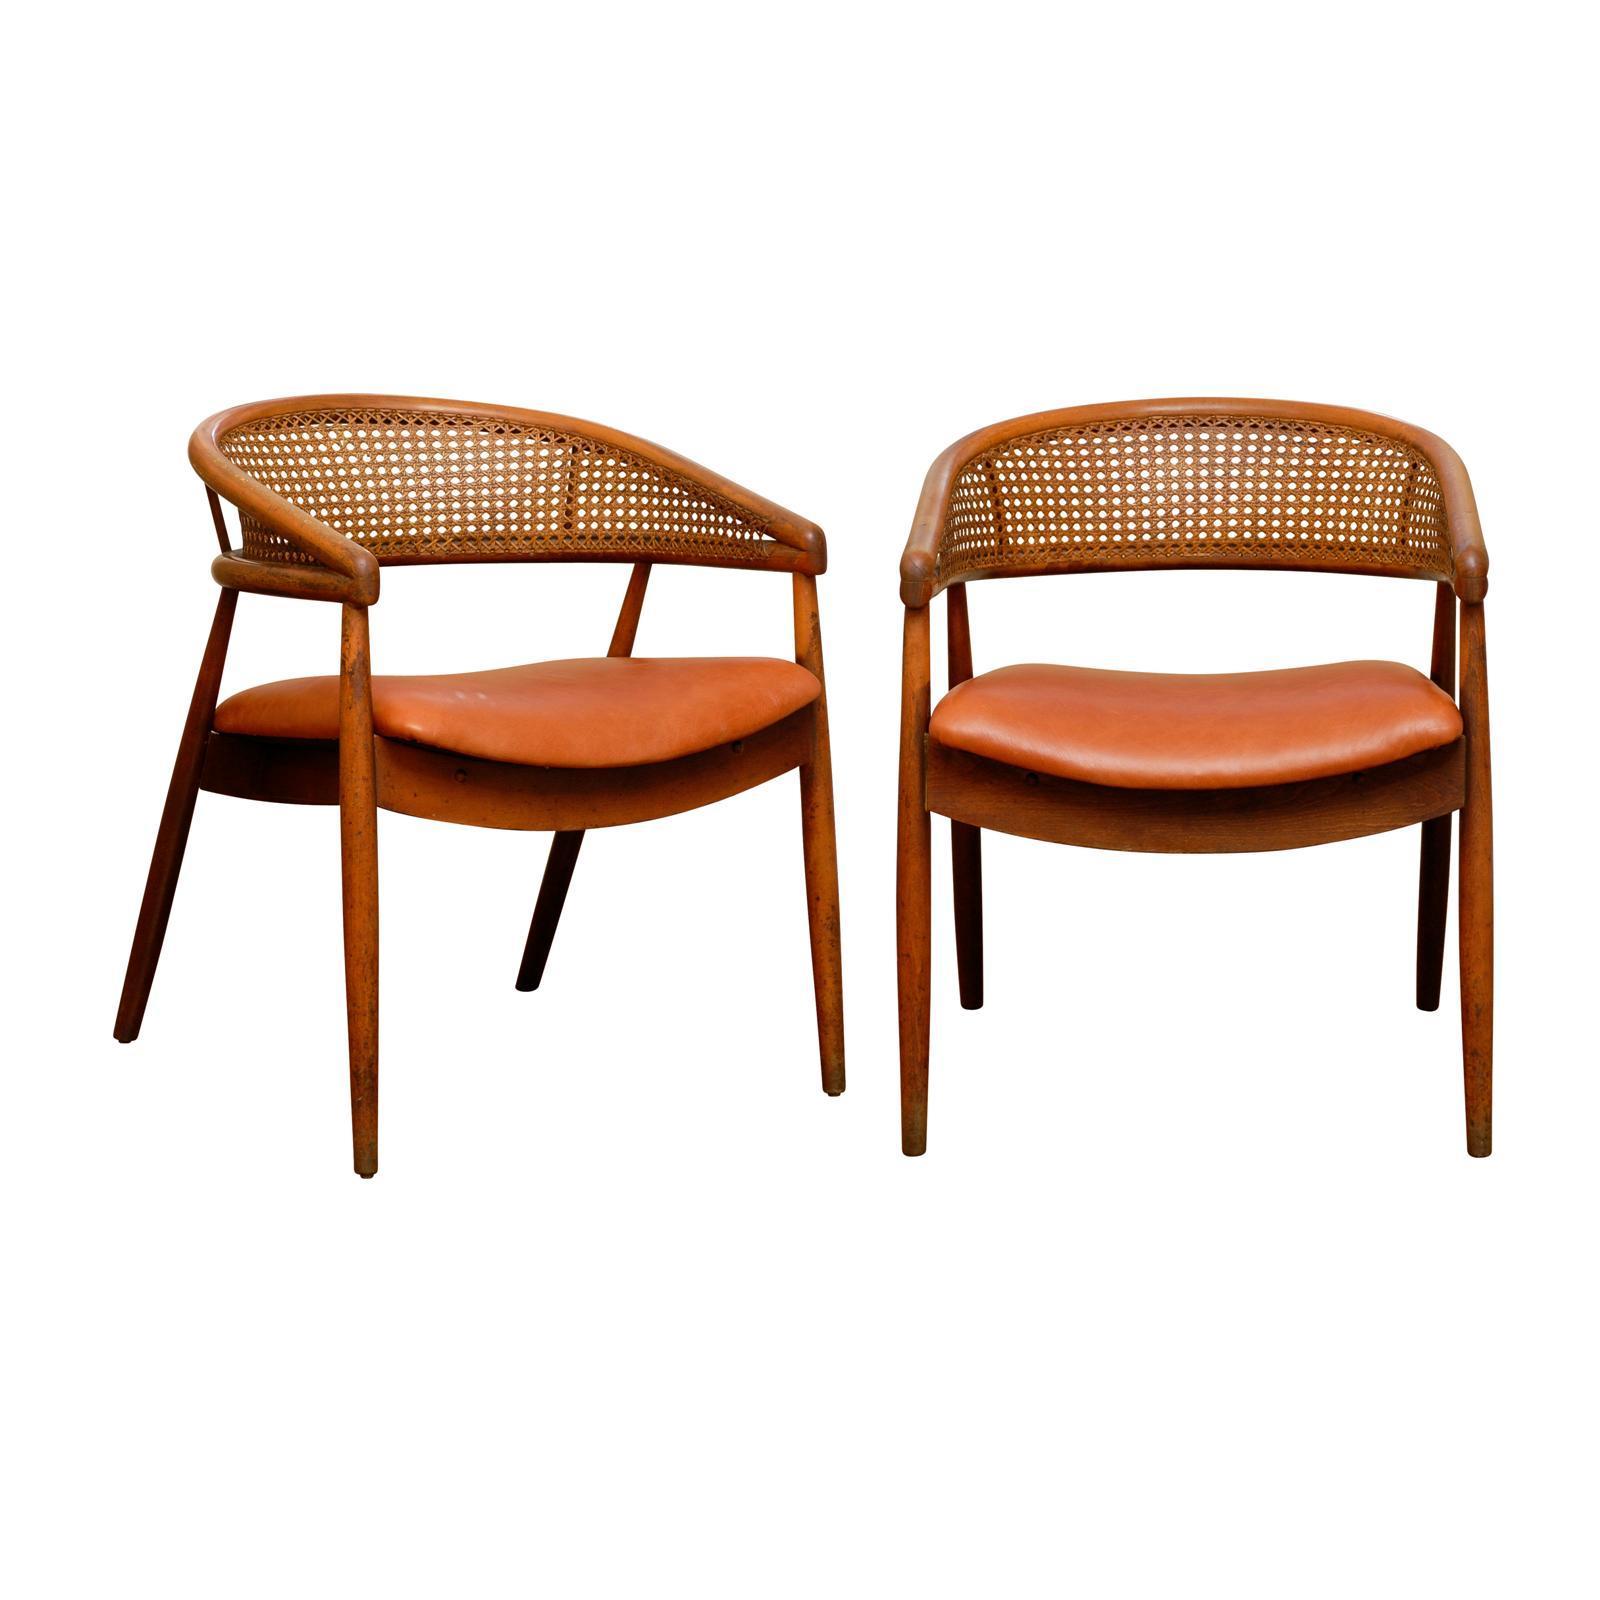 Rare paire de fauteuils de style James Mont en hêtre courbé et cannage